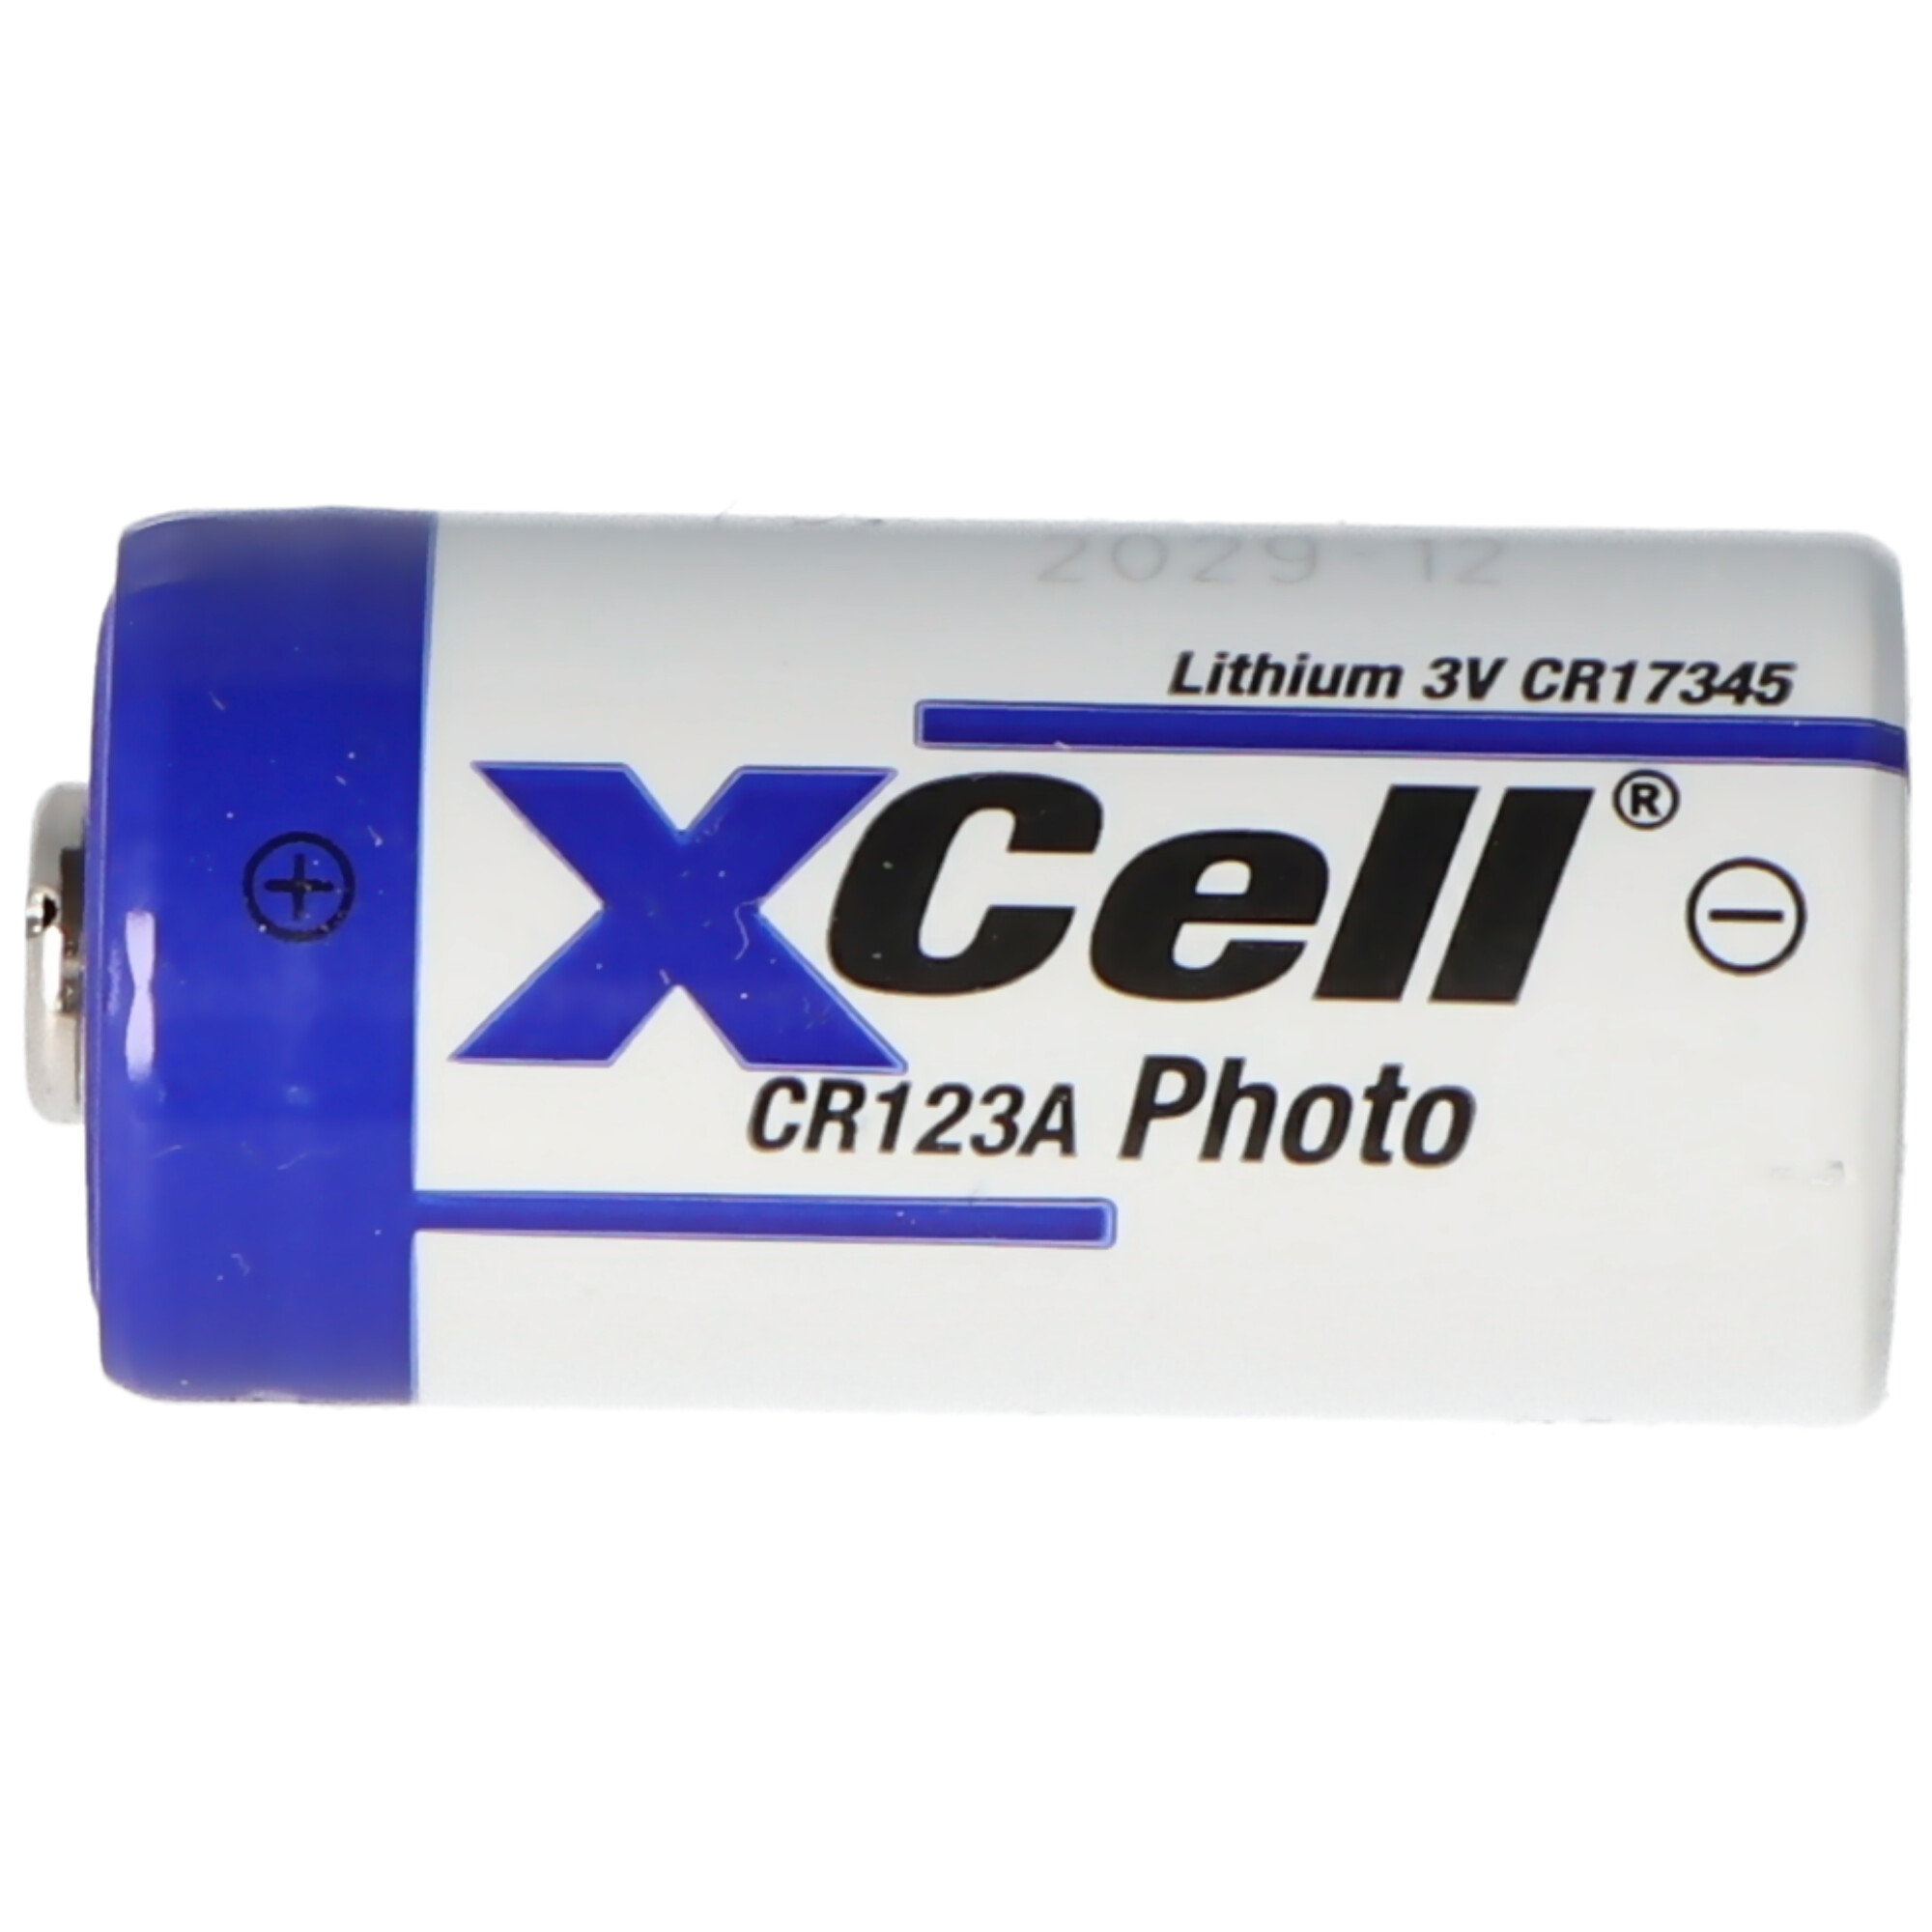 XCell Photobatterie CR123A Lithium Batterie 3 Volt max. 1550mAh, 34,5x17mm 19Gramm Lose Ware bulk